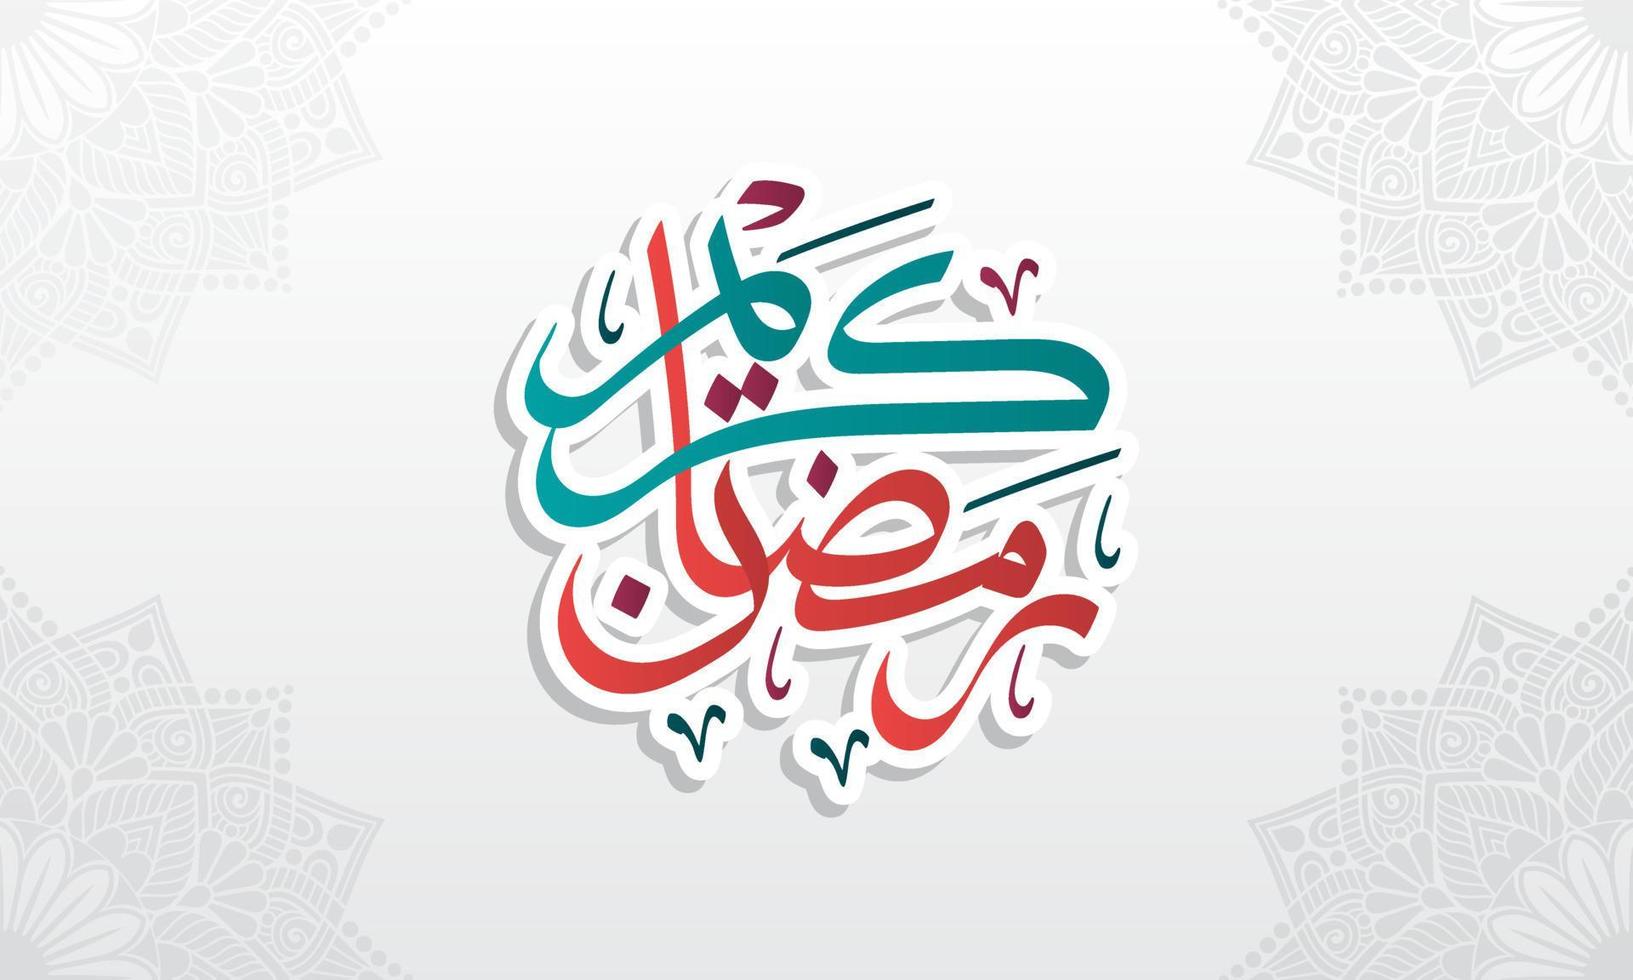 ramadan kareem hälsning kort. Ramadhan mubarak. Lycklig helig ramadan. månad av fasta för muslimer. arabicum kalligrafi. logotyp för ramadan i arabicum typ. vektor